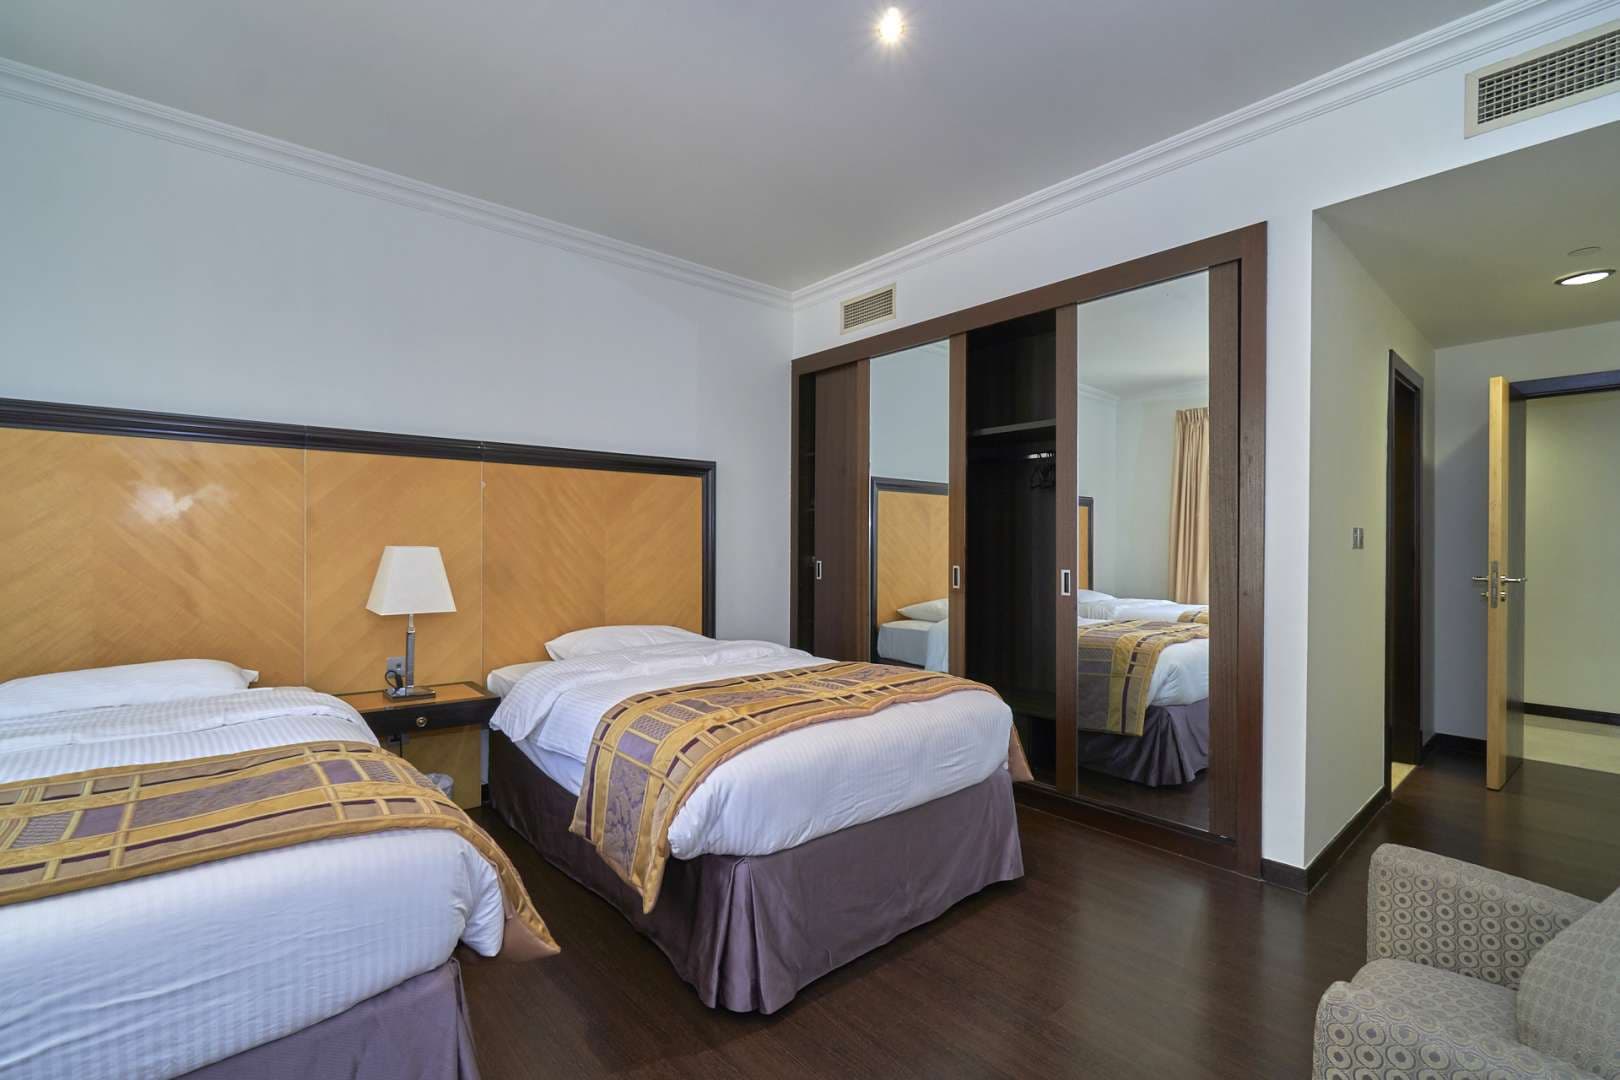 3 Bedroom Apartment For Rent Murjan Lp08238 263d484e0ef78e00.jpg